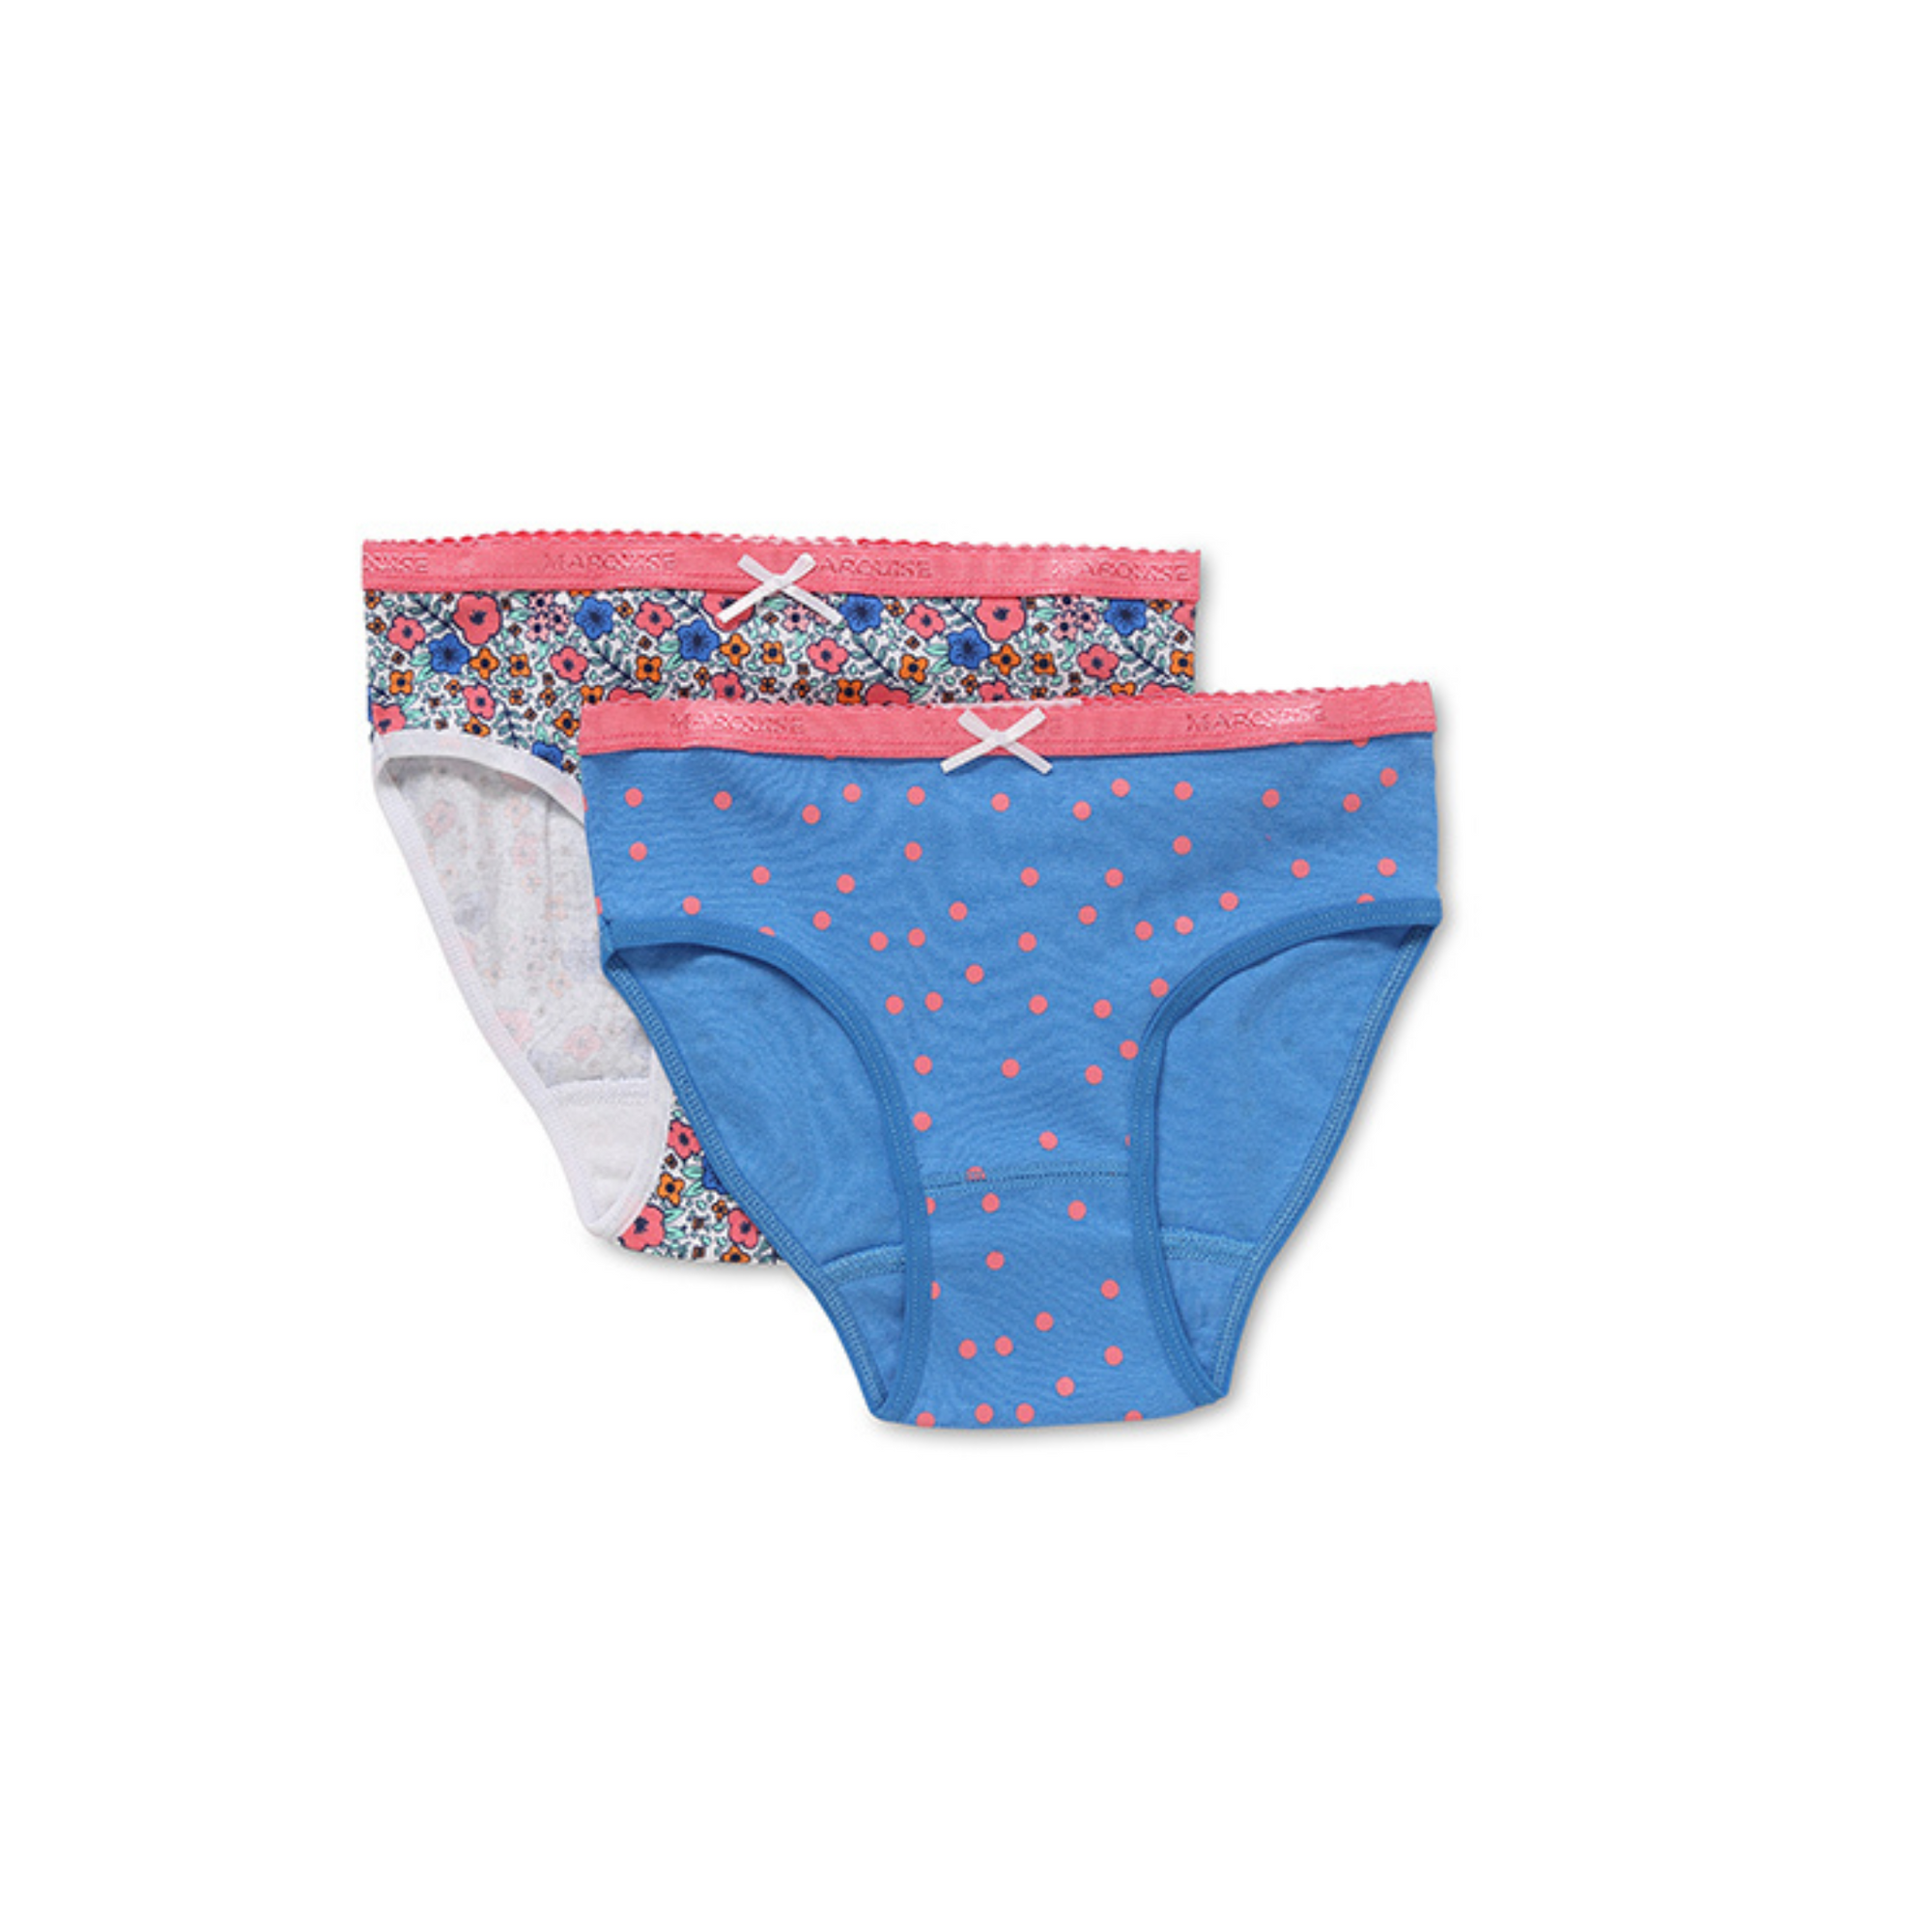 Marquise Ditsie Pink Spot Floral Girls Underwear  2 Pack - Blue